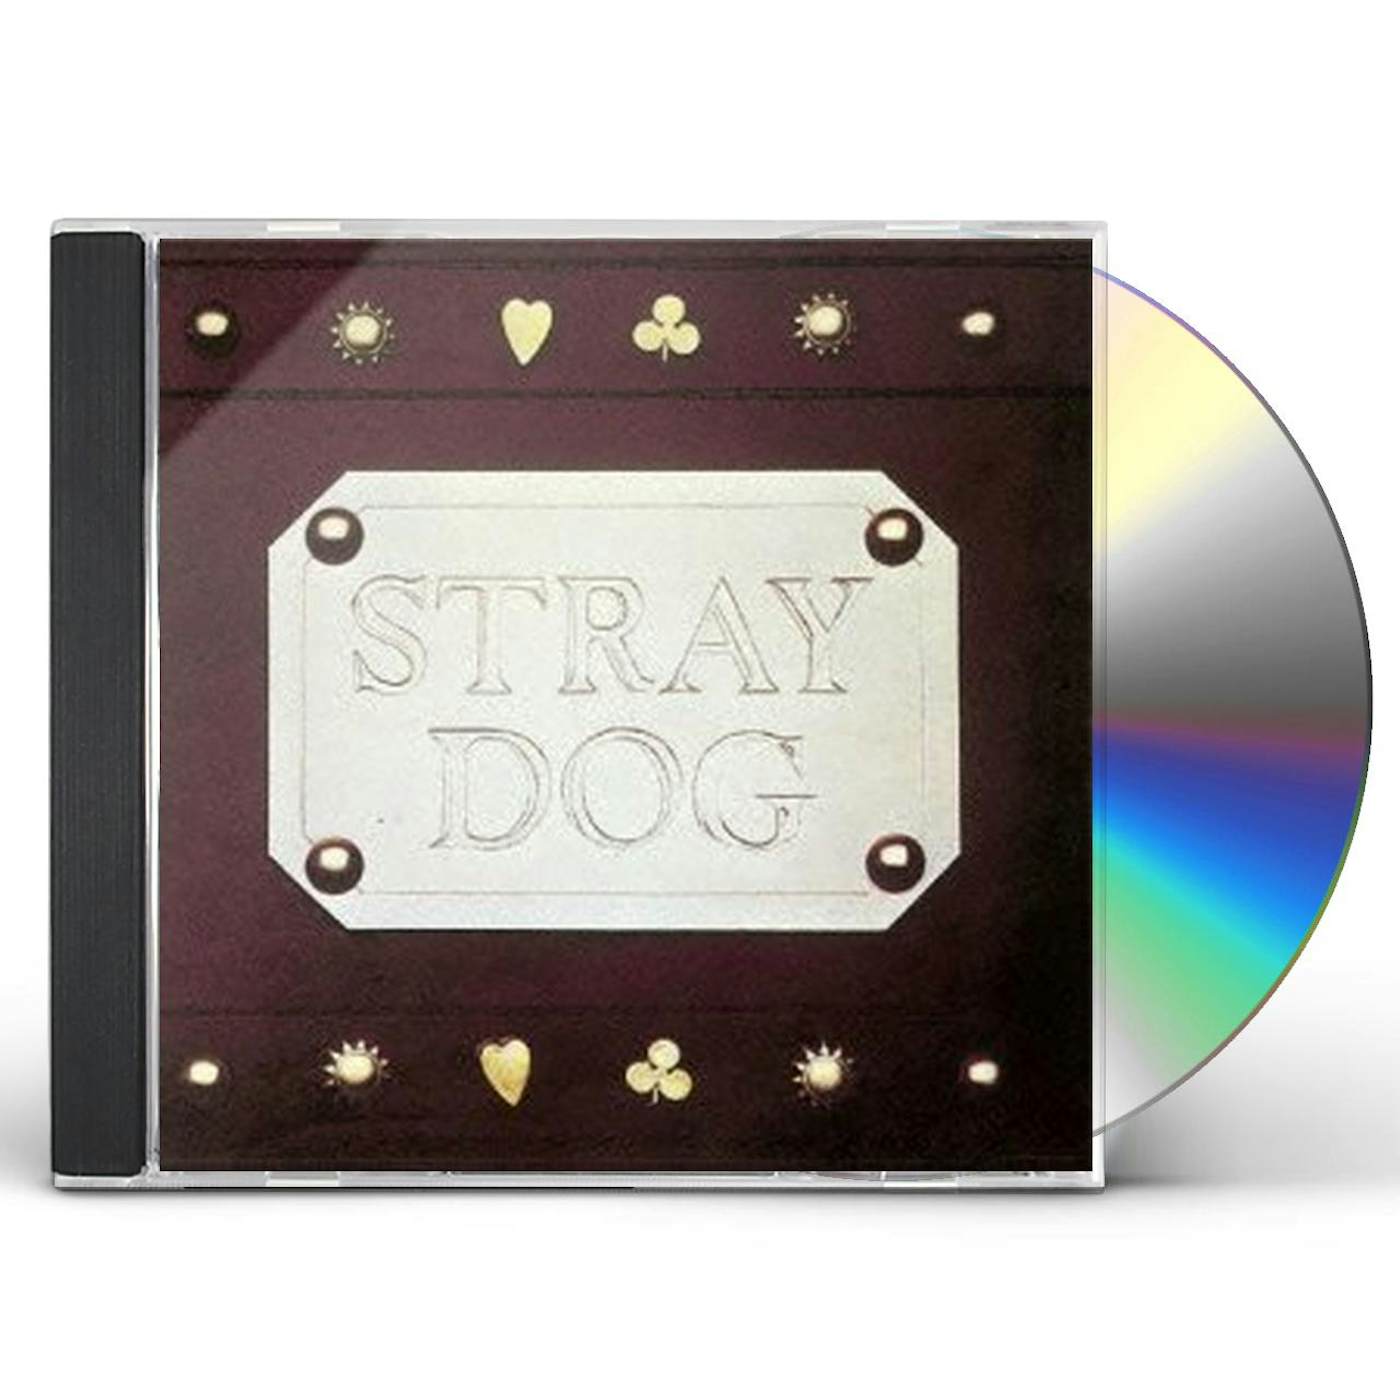 STRAY DOG CD